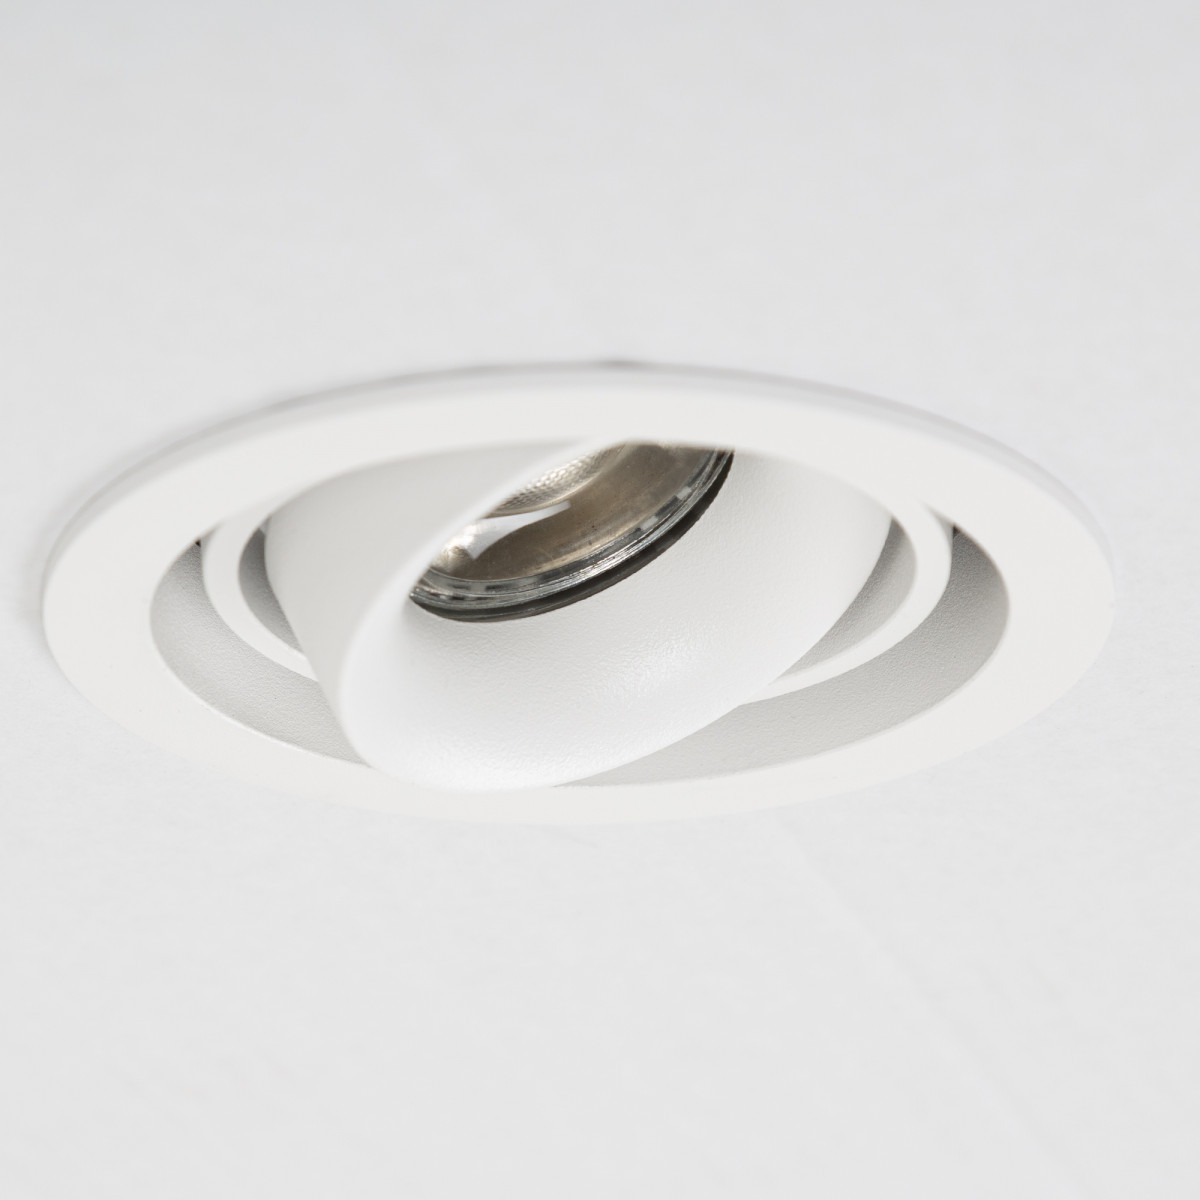 Spot de plafond Bjorn 1 (7669) rond blanc à encastrer orientable et rotatif | Nostalux.fr